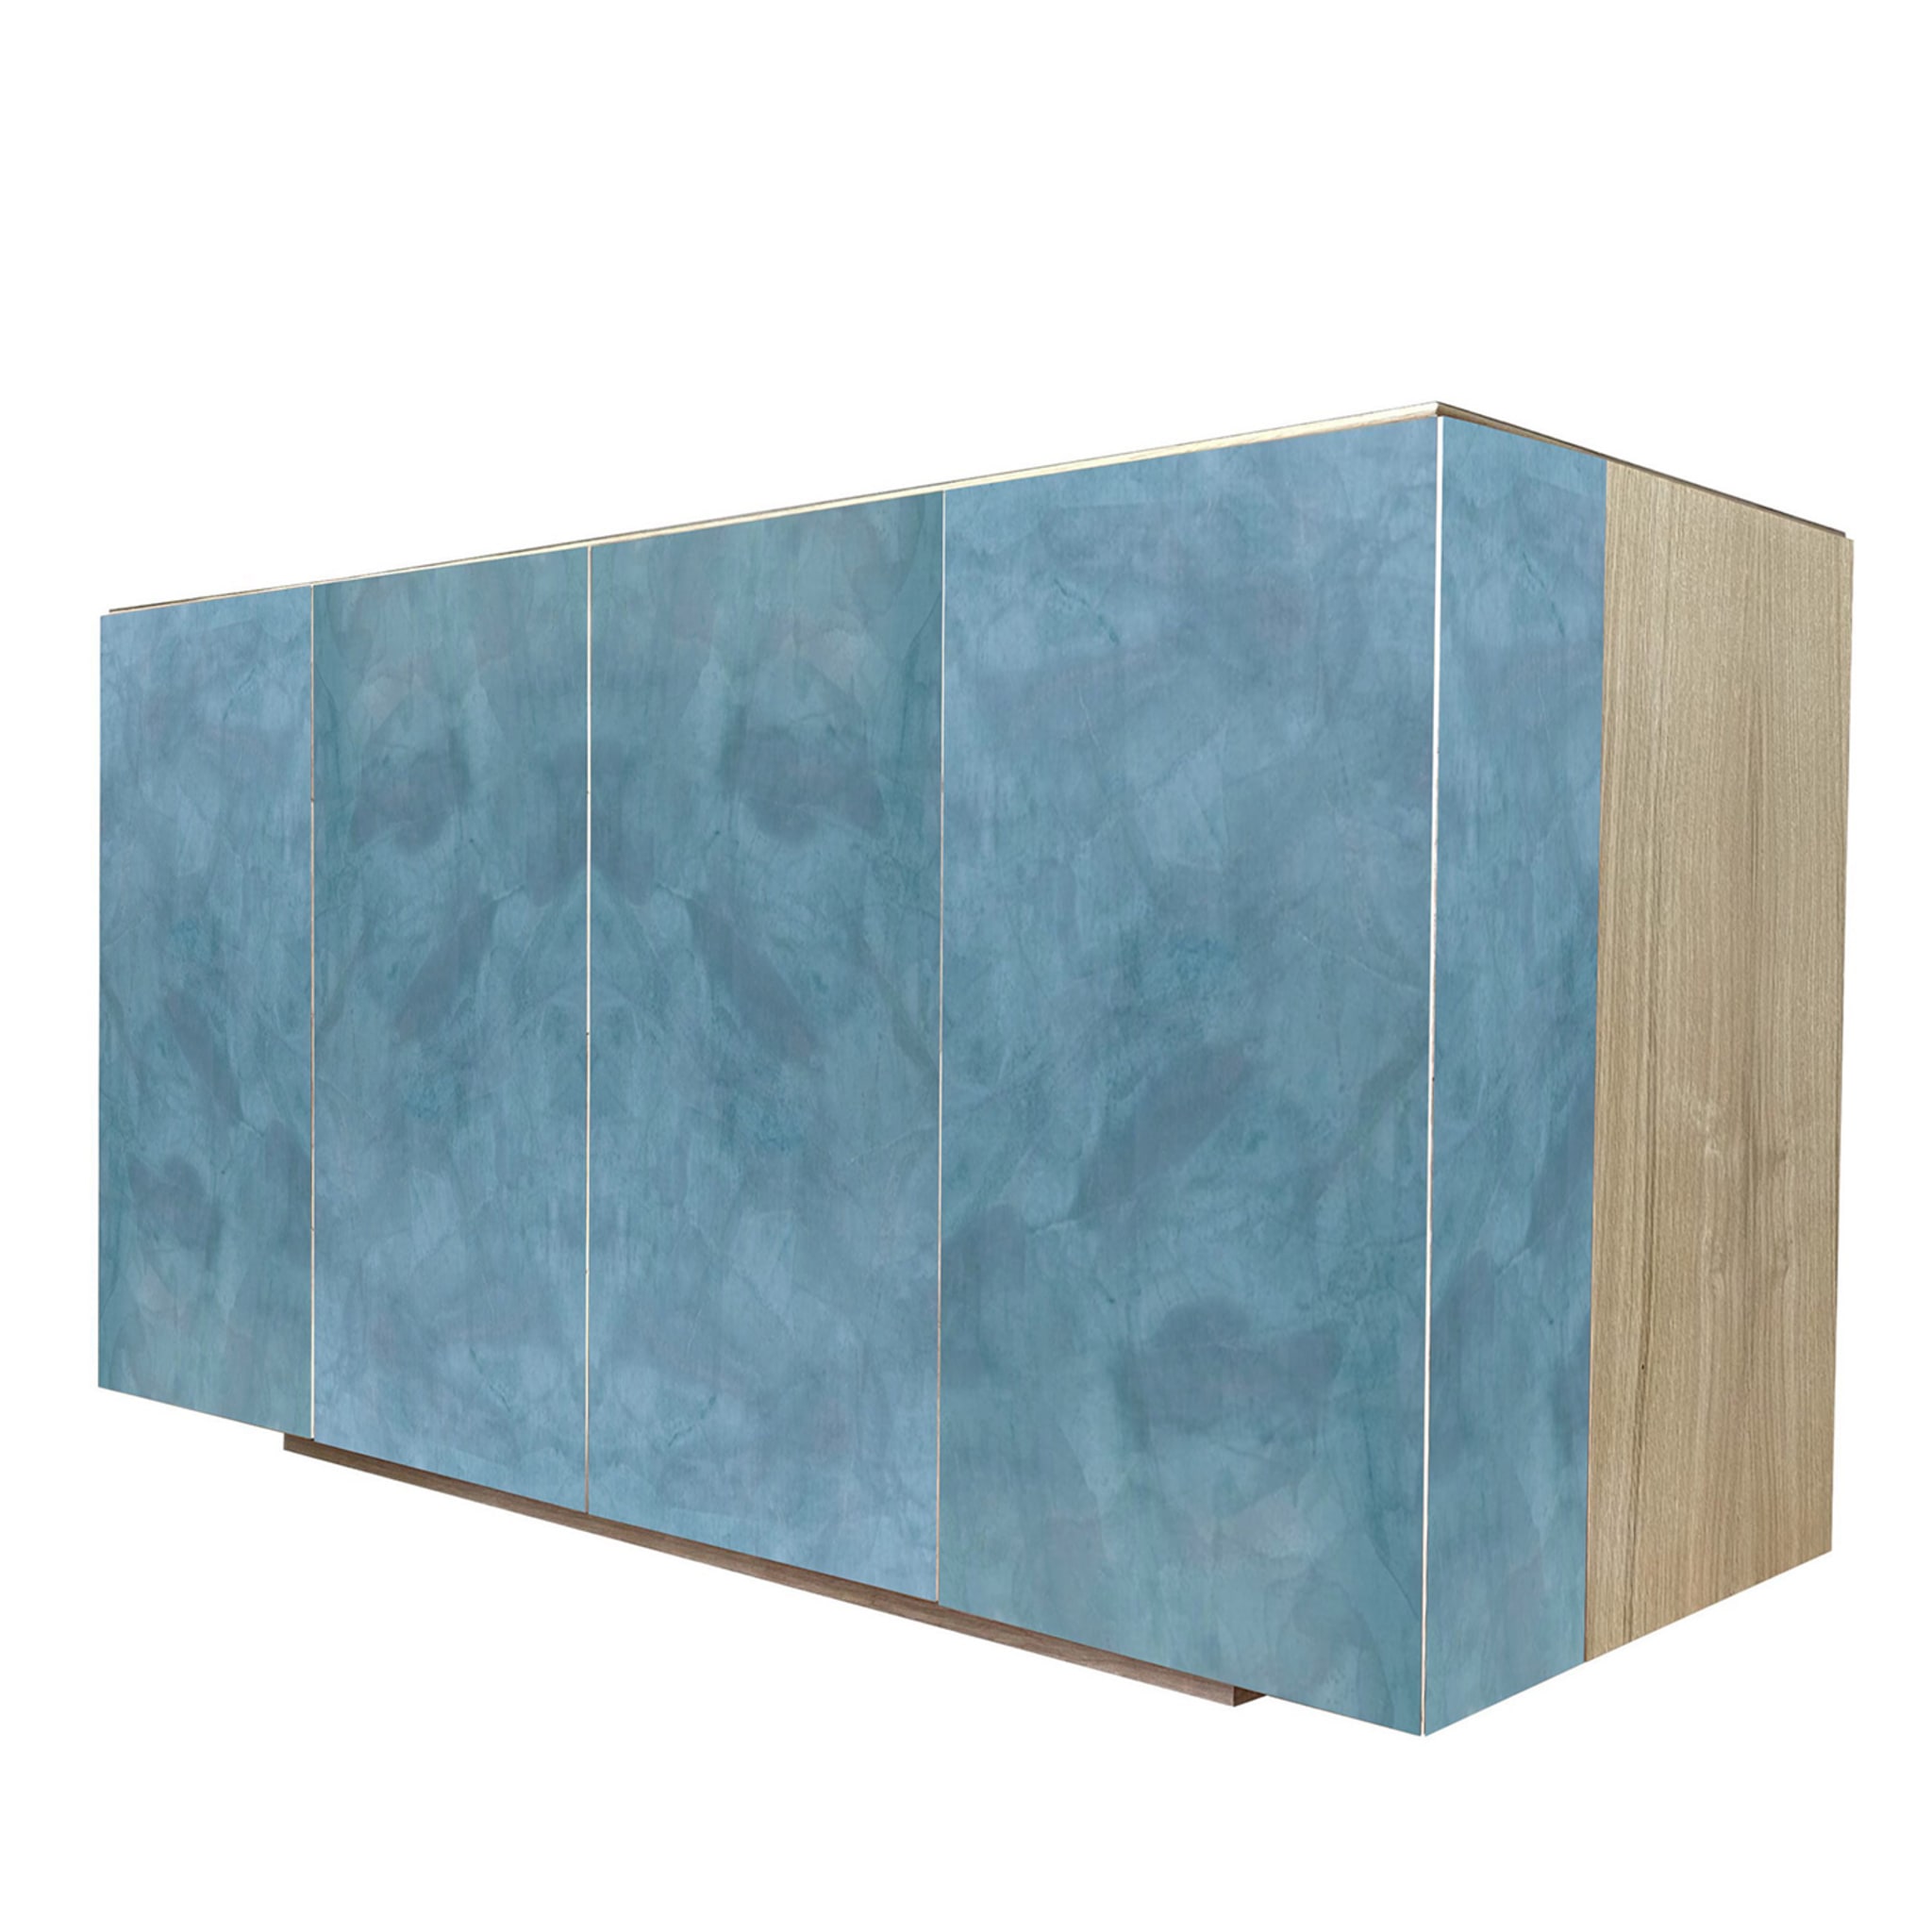 Boccadarno Sei 4-Door Blue Sideboard by Meccani Studio - Alternative view 1